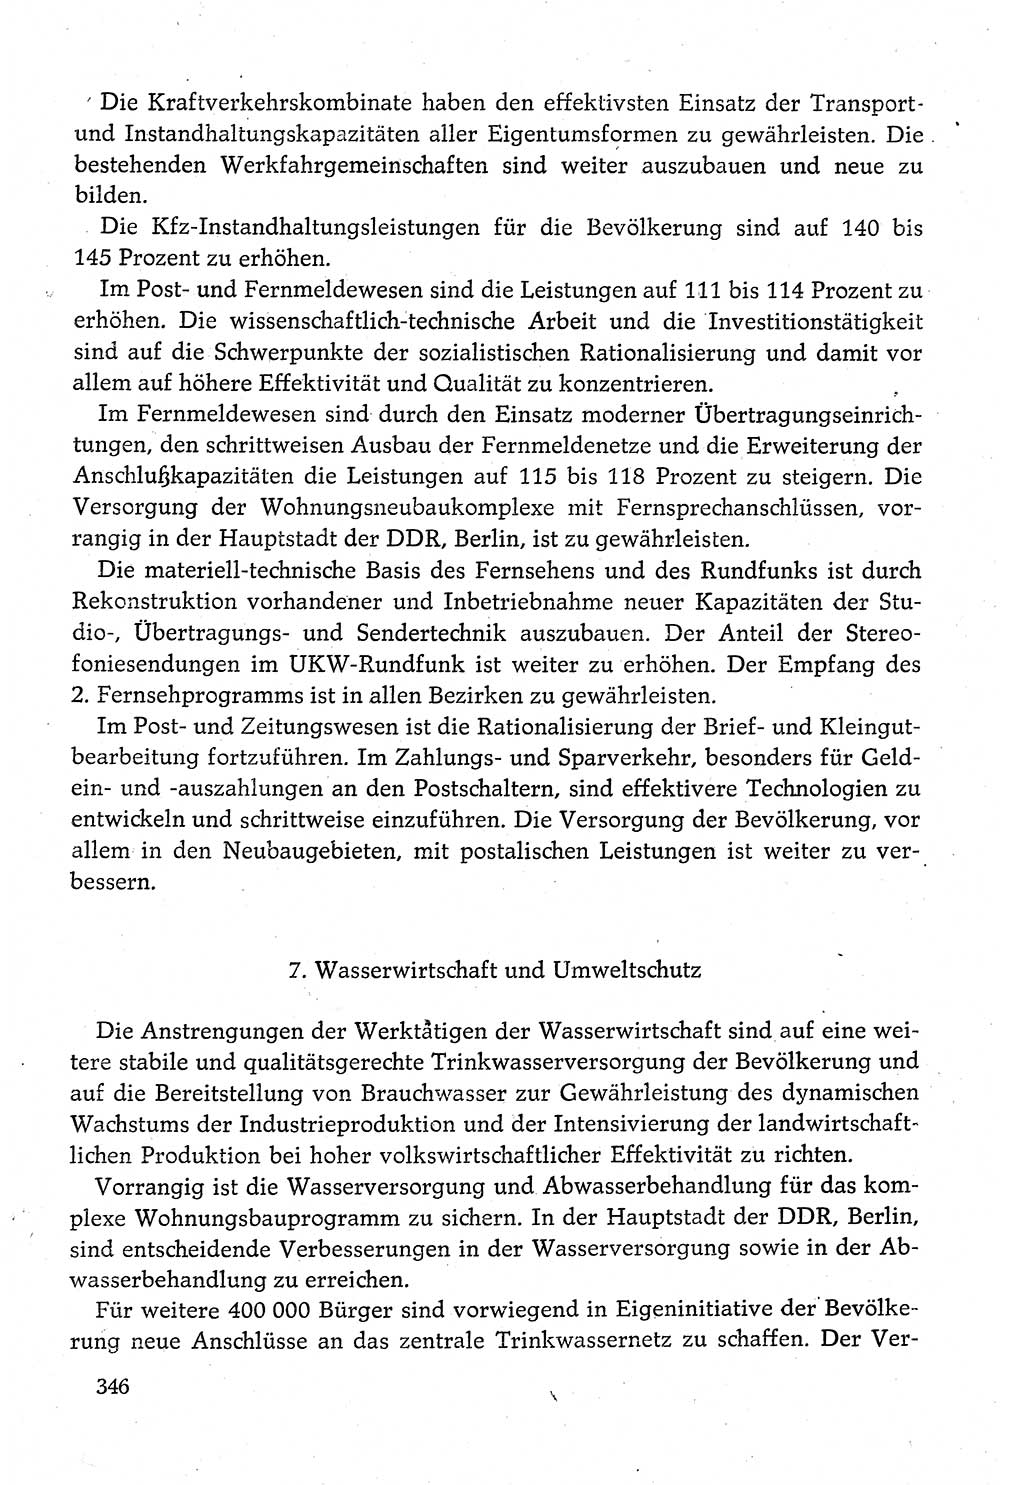 Dokumente der Sozialistischen Einheitspartei Deutschlands (SED) [Deutsche Demokratische Republik (DDR)] 1980-1981, Seite 346 (Dok. SED DDR 1980-1981, S. 346)